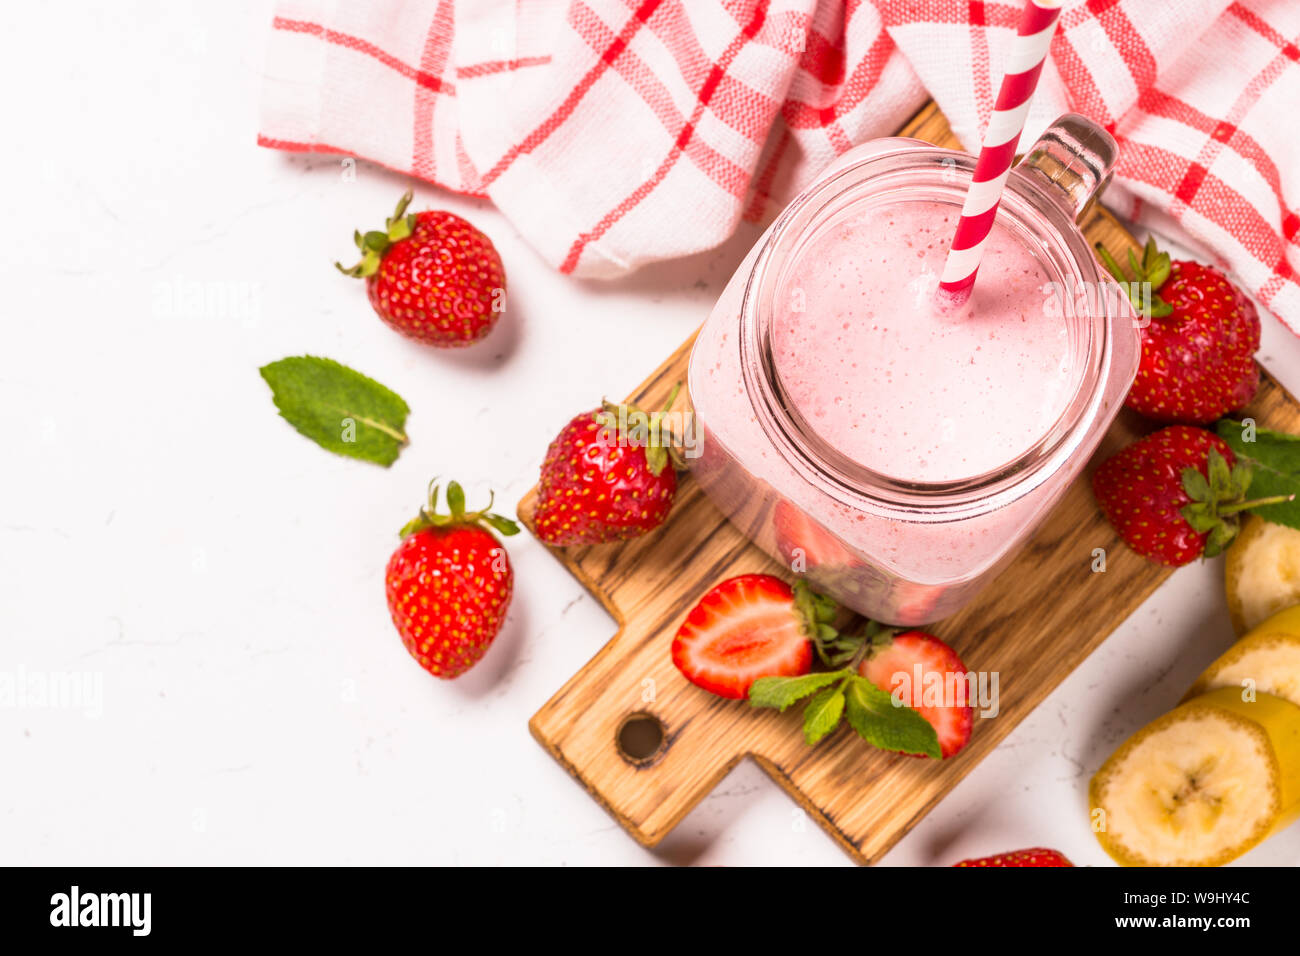 Erdbeer Milchshake oder Smoothie in Mason jar. Stockfoto